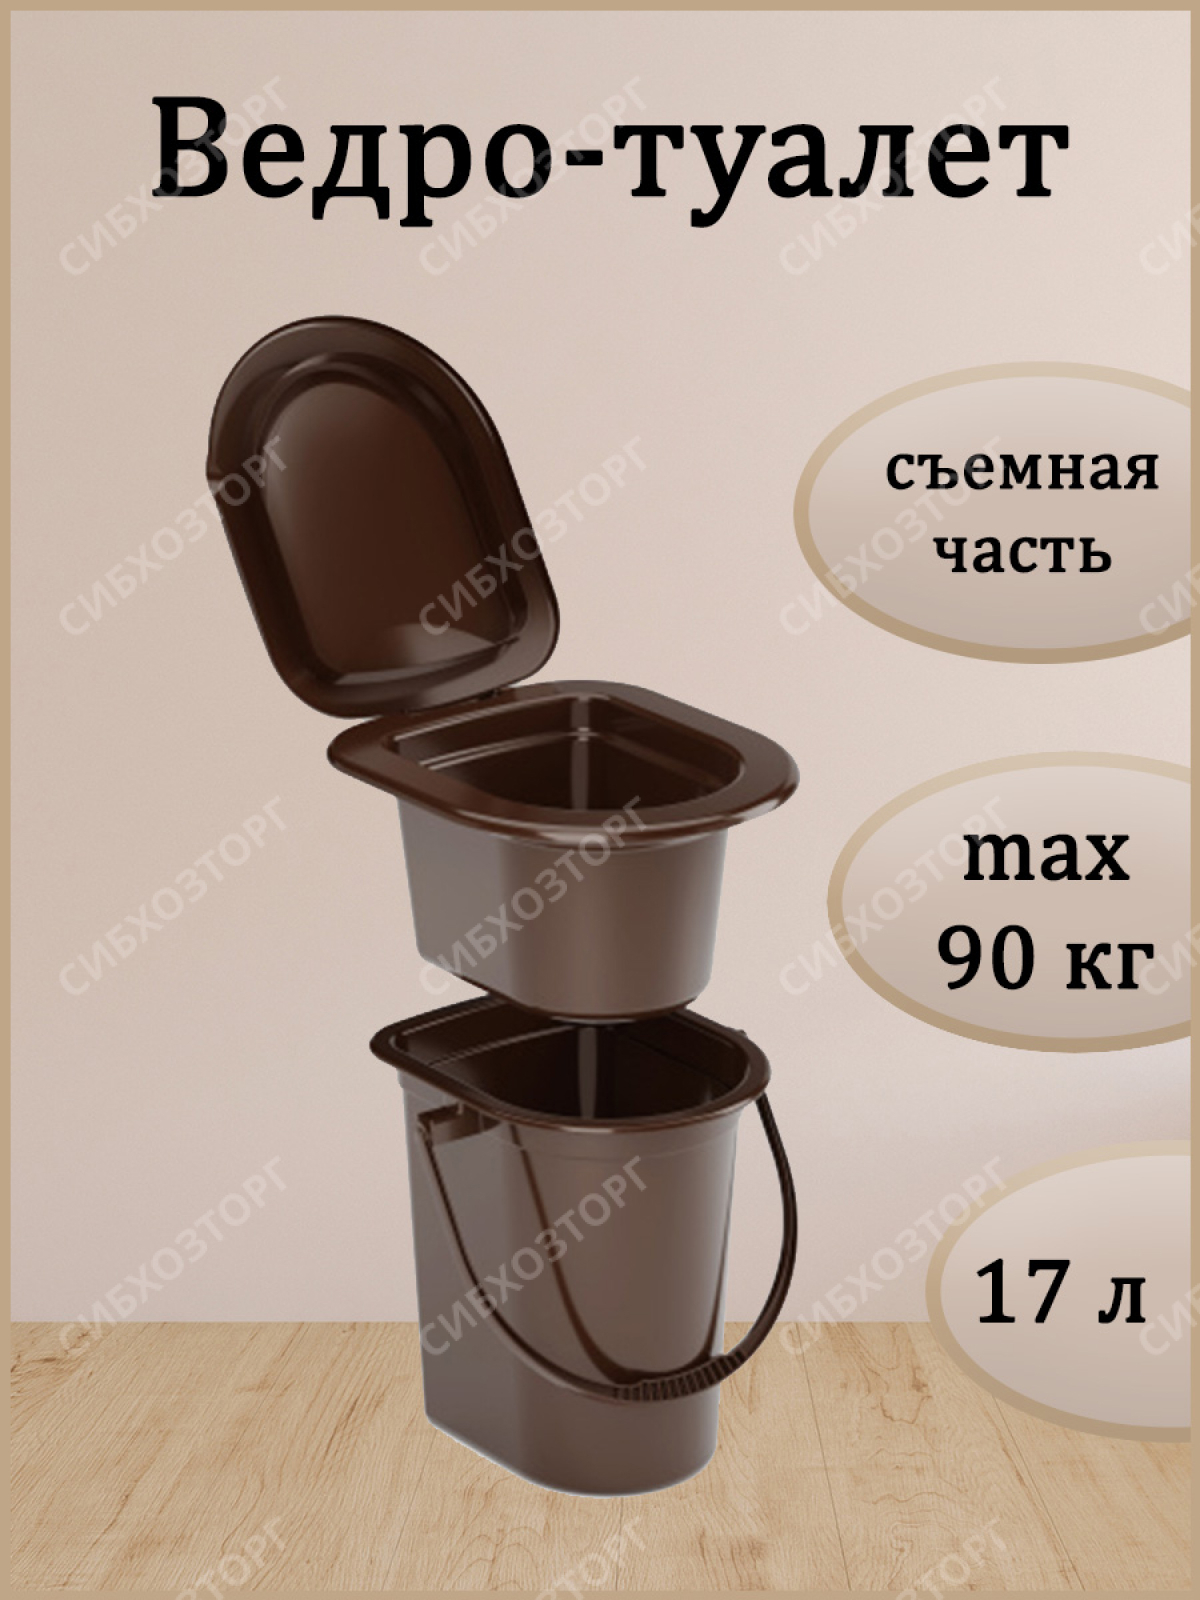 Ведра-туалеты - купить в Москве недорого, цены в интернет-магазине эталон62.рф